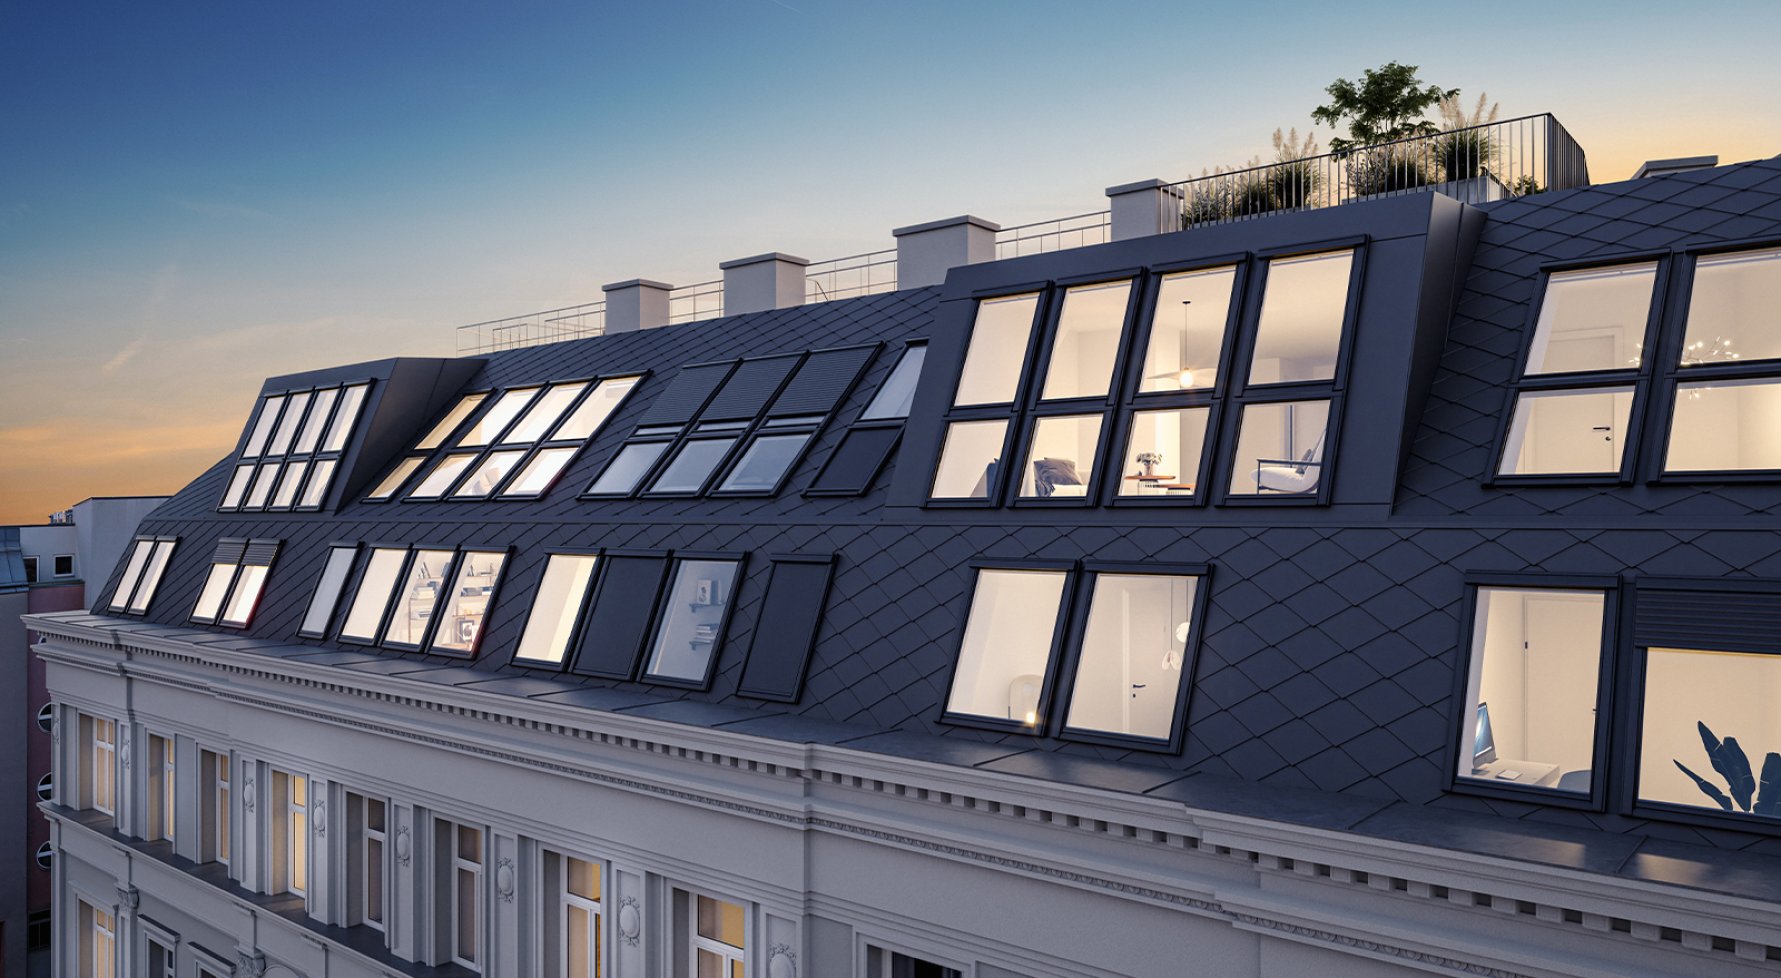 Immobilie in 1030 Wien, 3. Bezirk: The Legacy: 3-Zimmer Dachgeschoßtraum auf einer Ebene mit ruhiger Außenfläche - bild 1